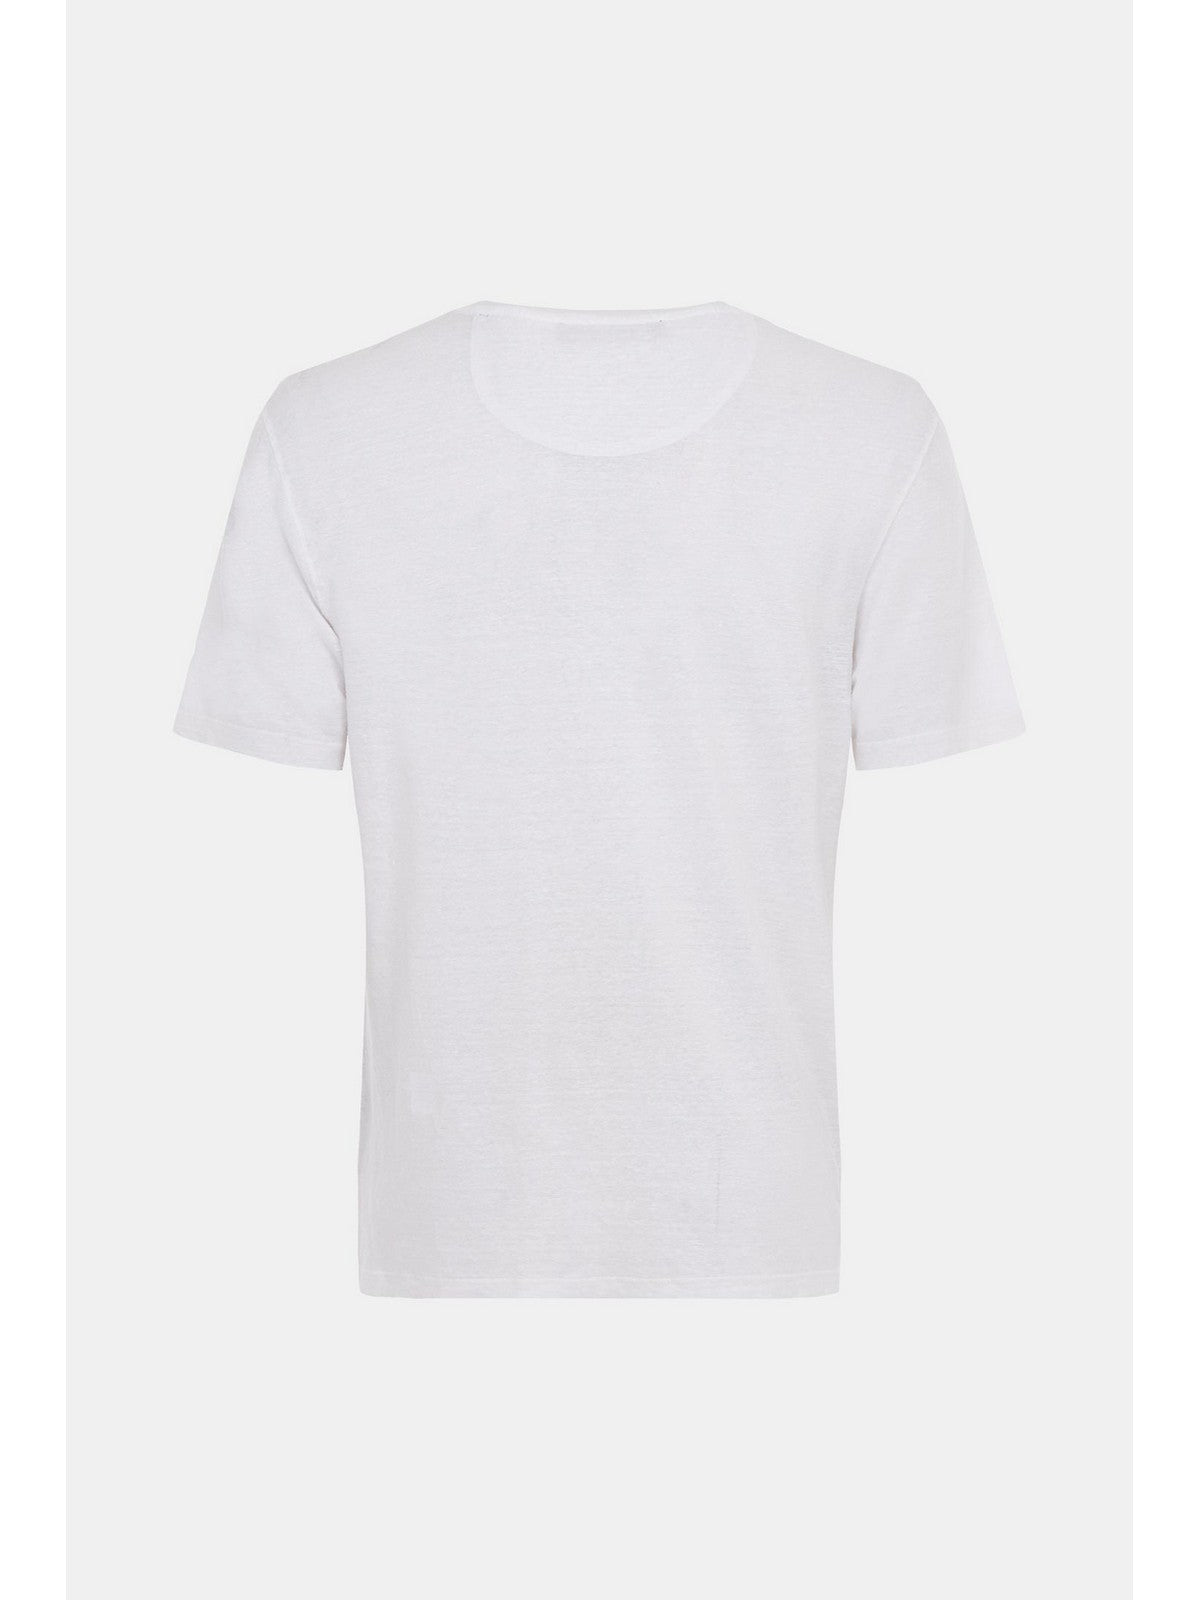 GRAN SASSO T-Shirt e Polo Uomo  60141/78616 250 Bianco